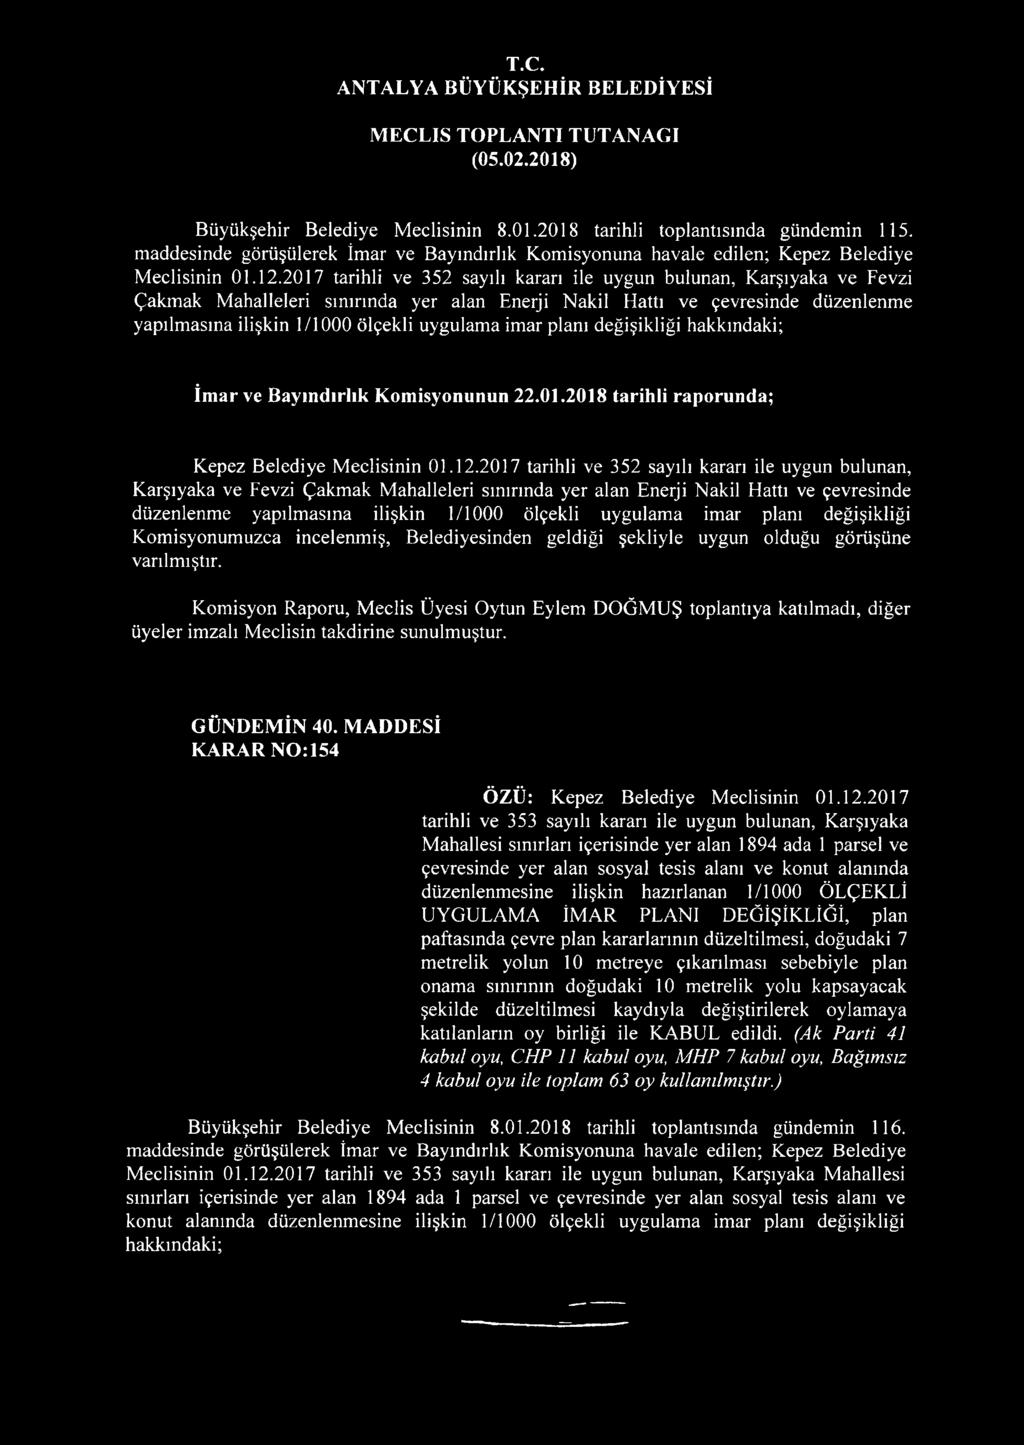 imar planı değişikliği hakkındaki; İmar ve Bayındırlık Komisyonunun 22.01.2018 tarihli raporunda; Kepez Belediye Meclisinin 01.12.